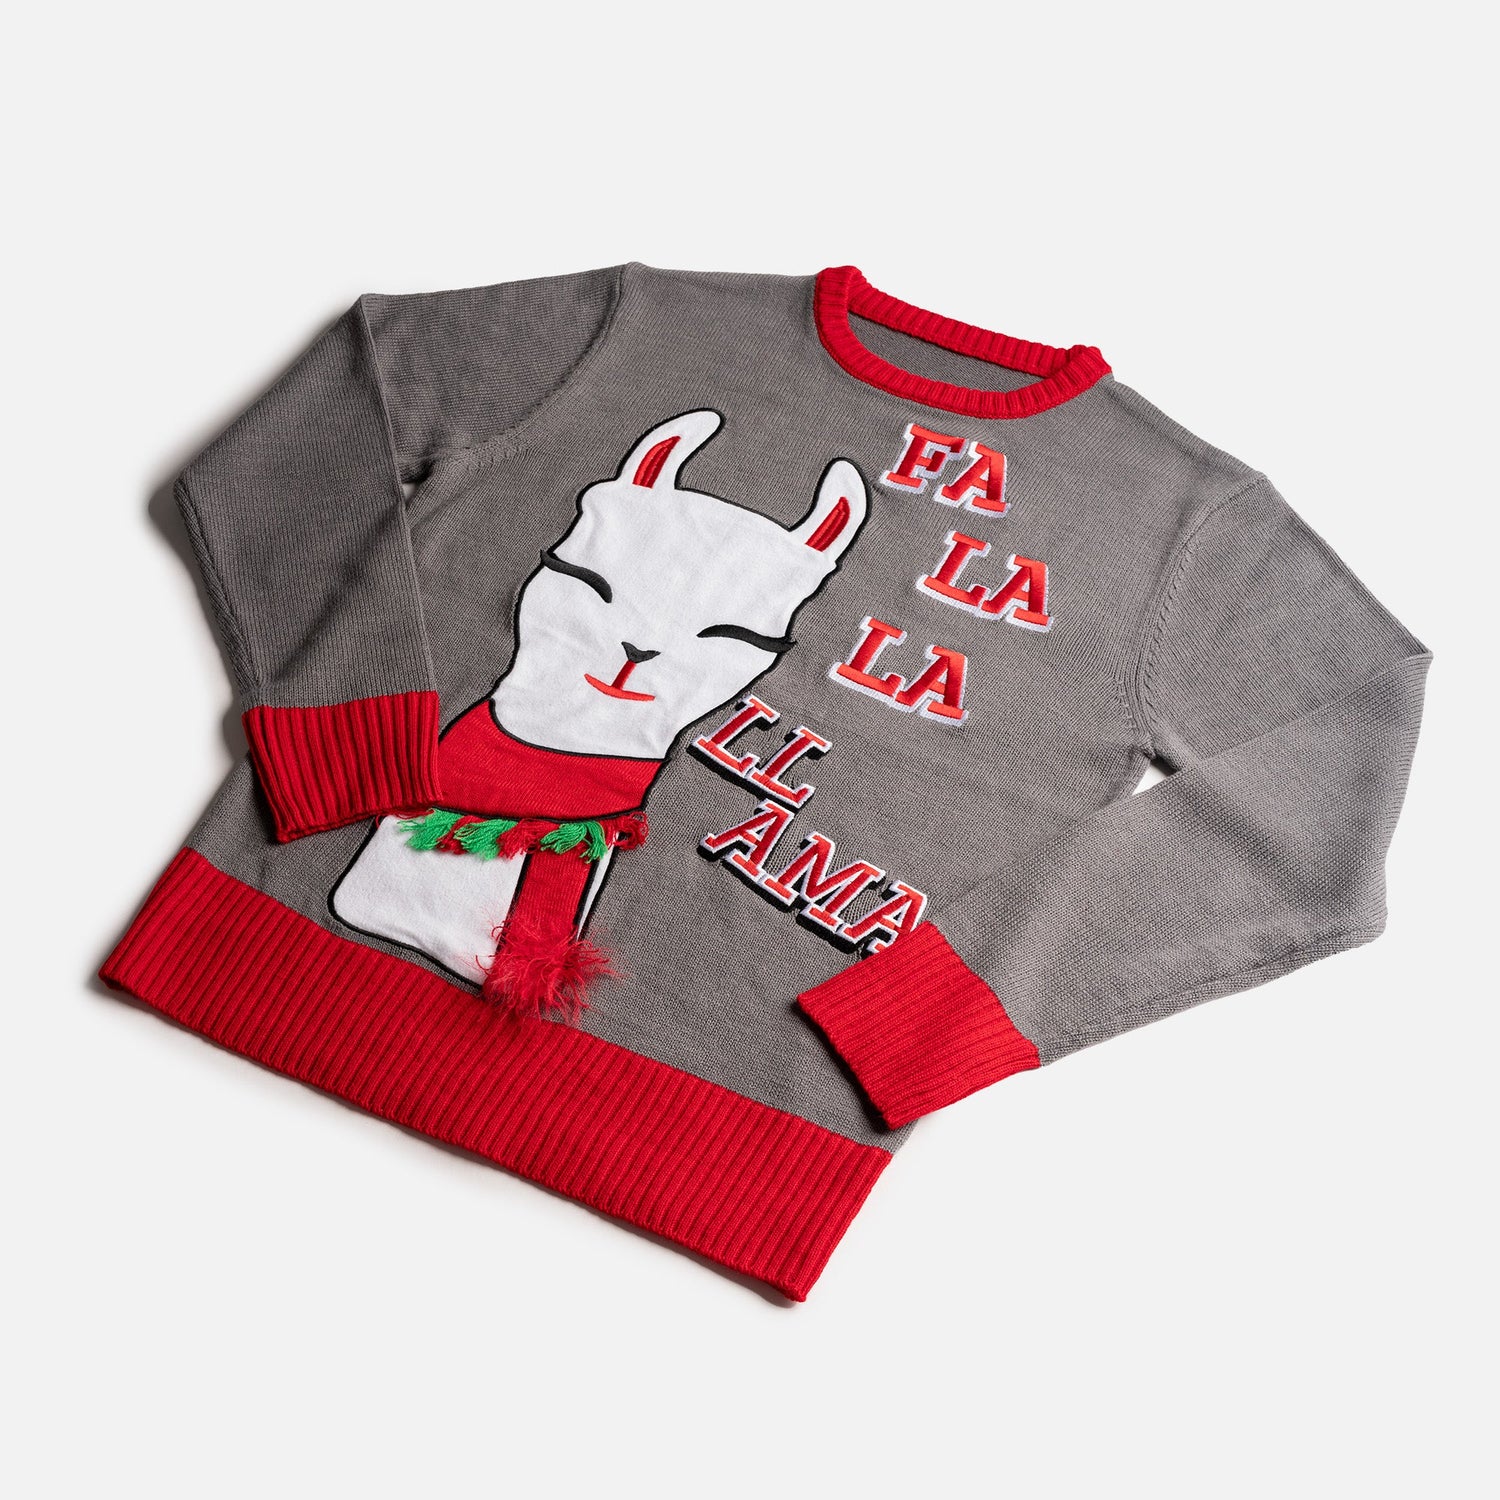 Matching Human & Dog Ugly Xmas Sweater - Fa La La Llama - Silver Paw